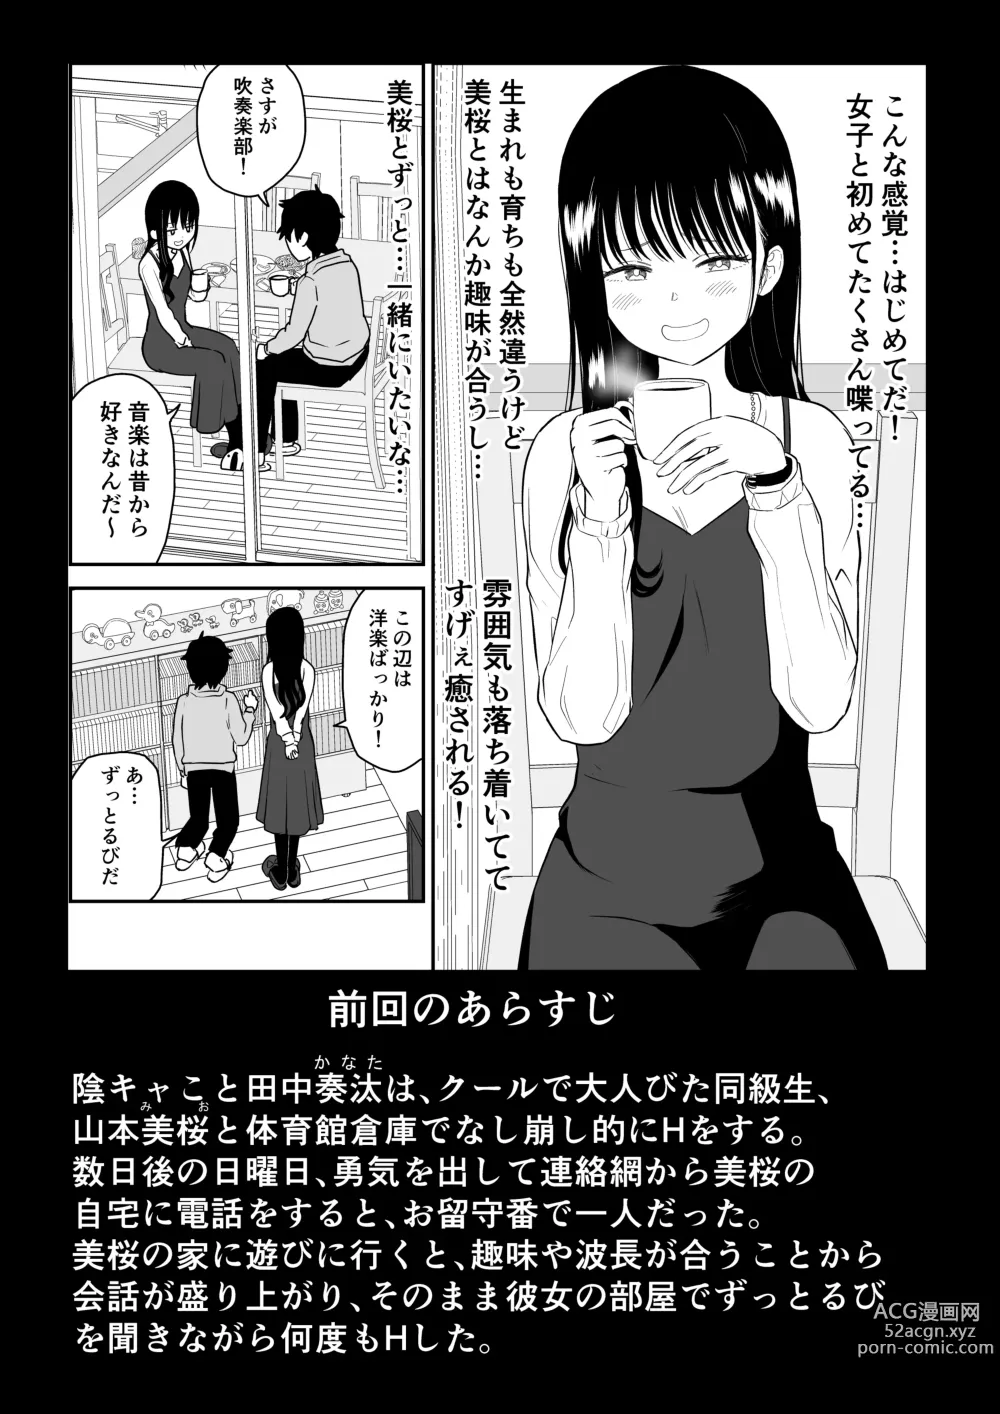 Page 2 of doujinshi Cool-Dere JK 3 Shitsurakuen Hen